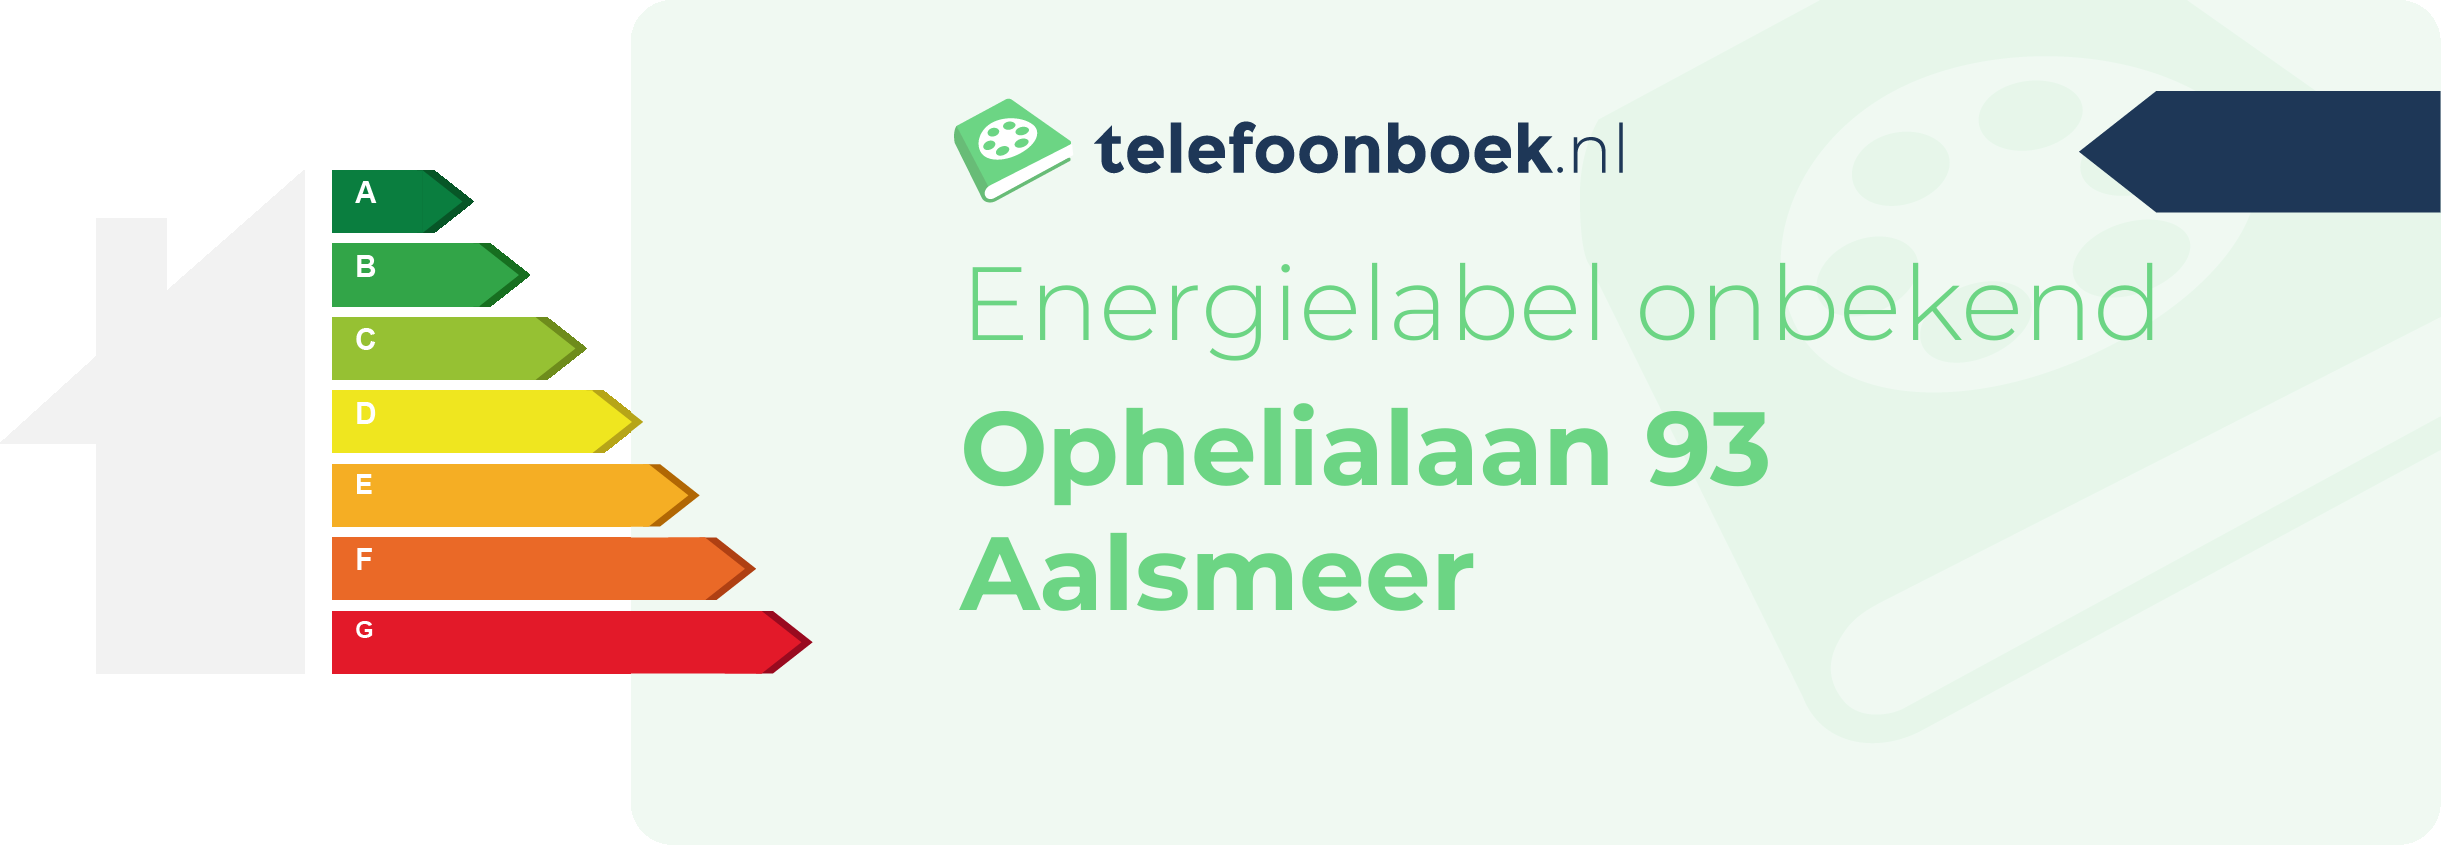 Energielabel Ophelialaan 93 Aalsmeer